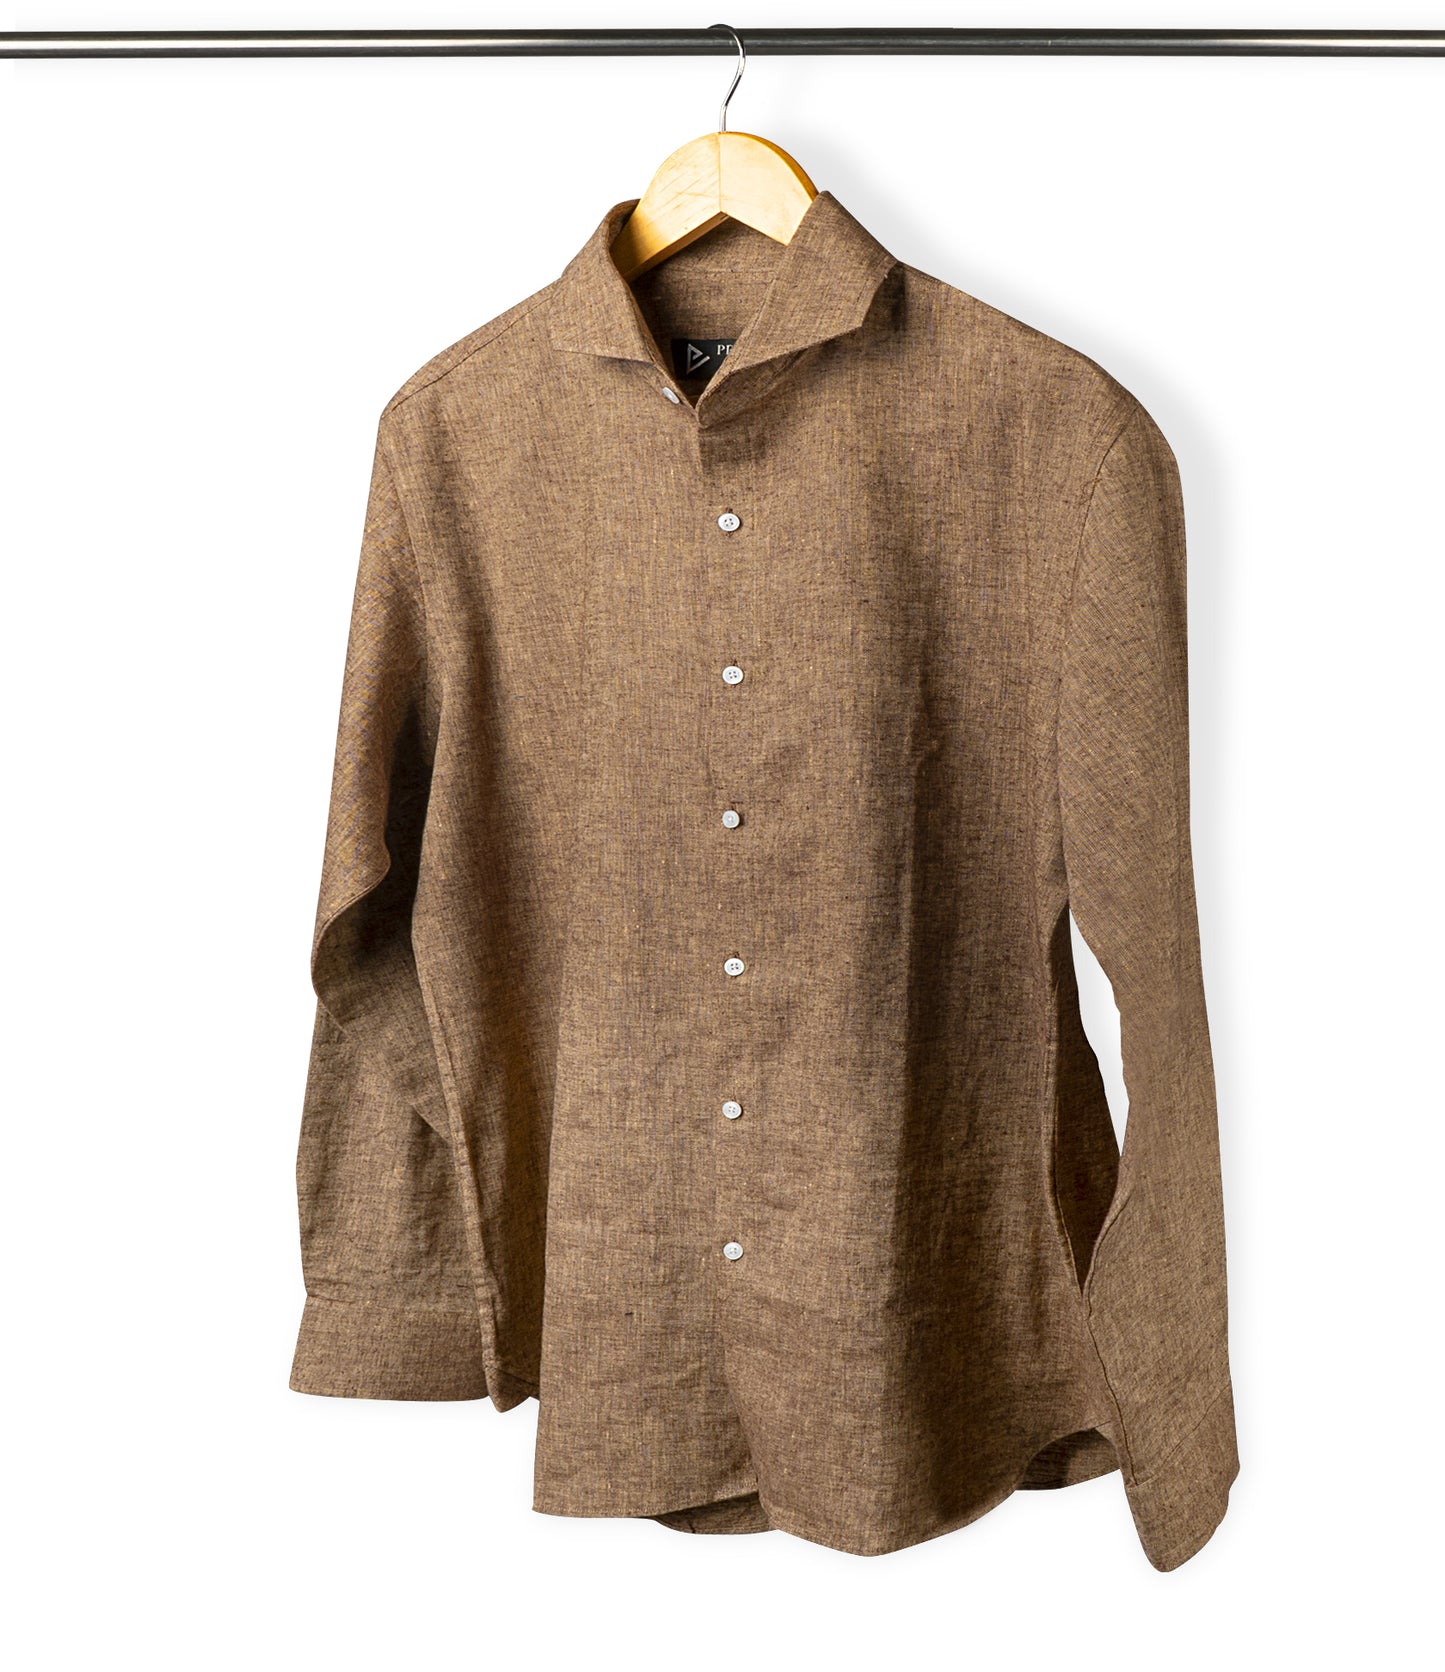 Brown Linen Shirt - Her's